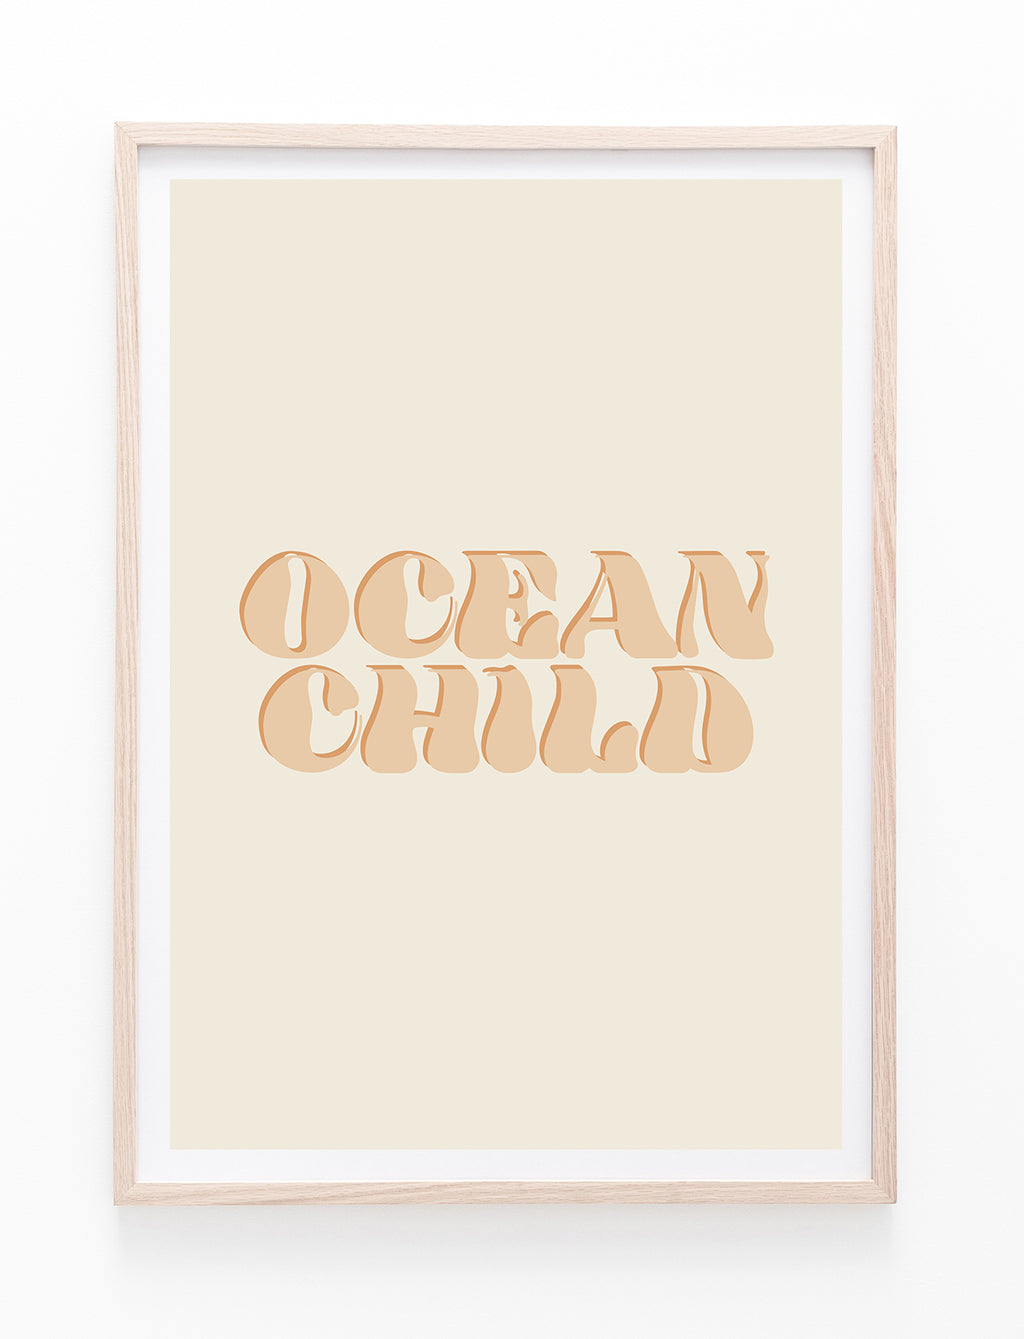 Ocean Child